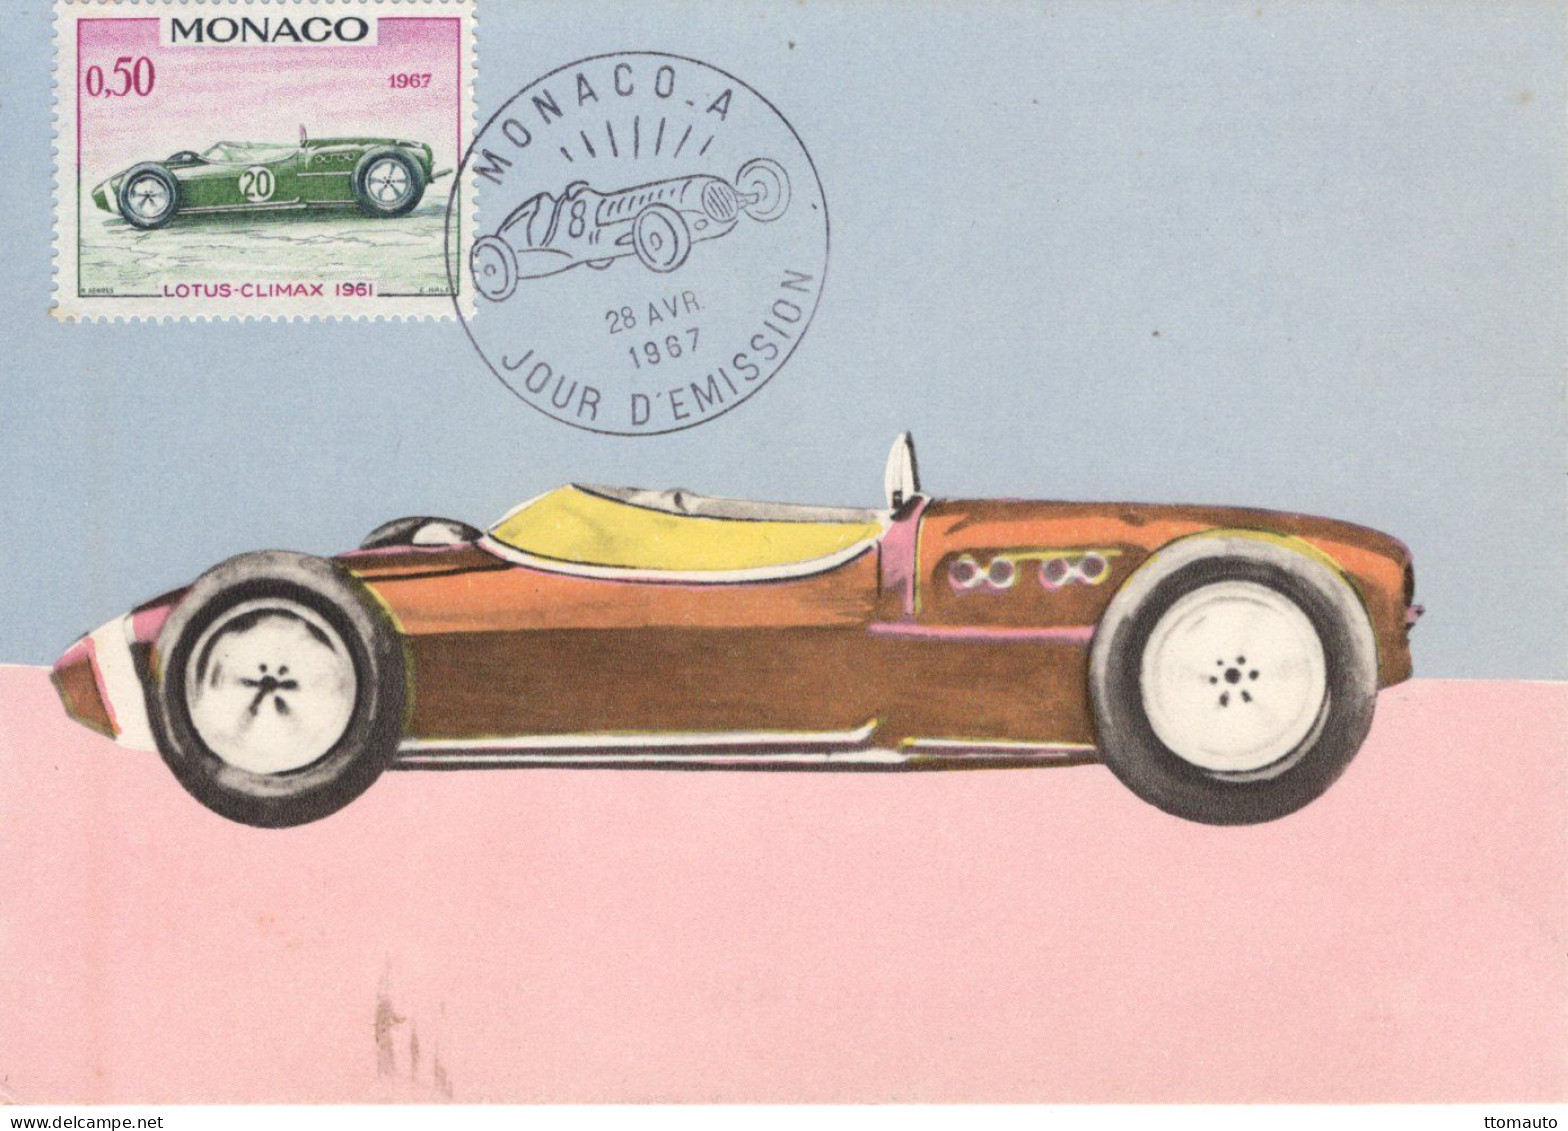 Monaco - Voitures De Course - Lotus-Climax (1961) - Carte Maxi FDC - Prémier Jour D'Emission - Cars